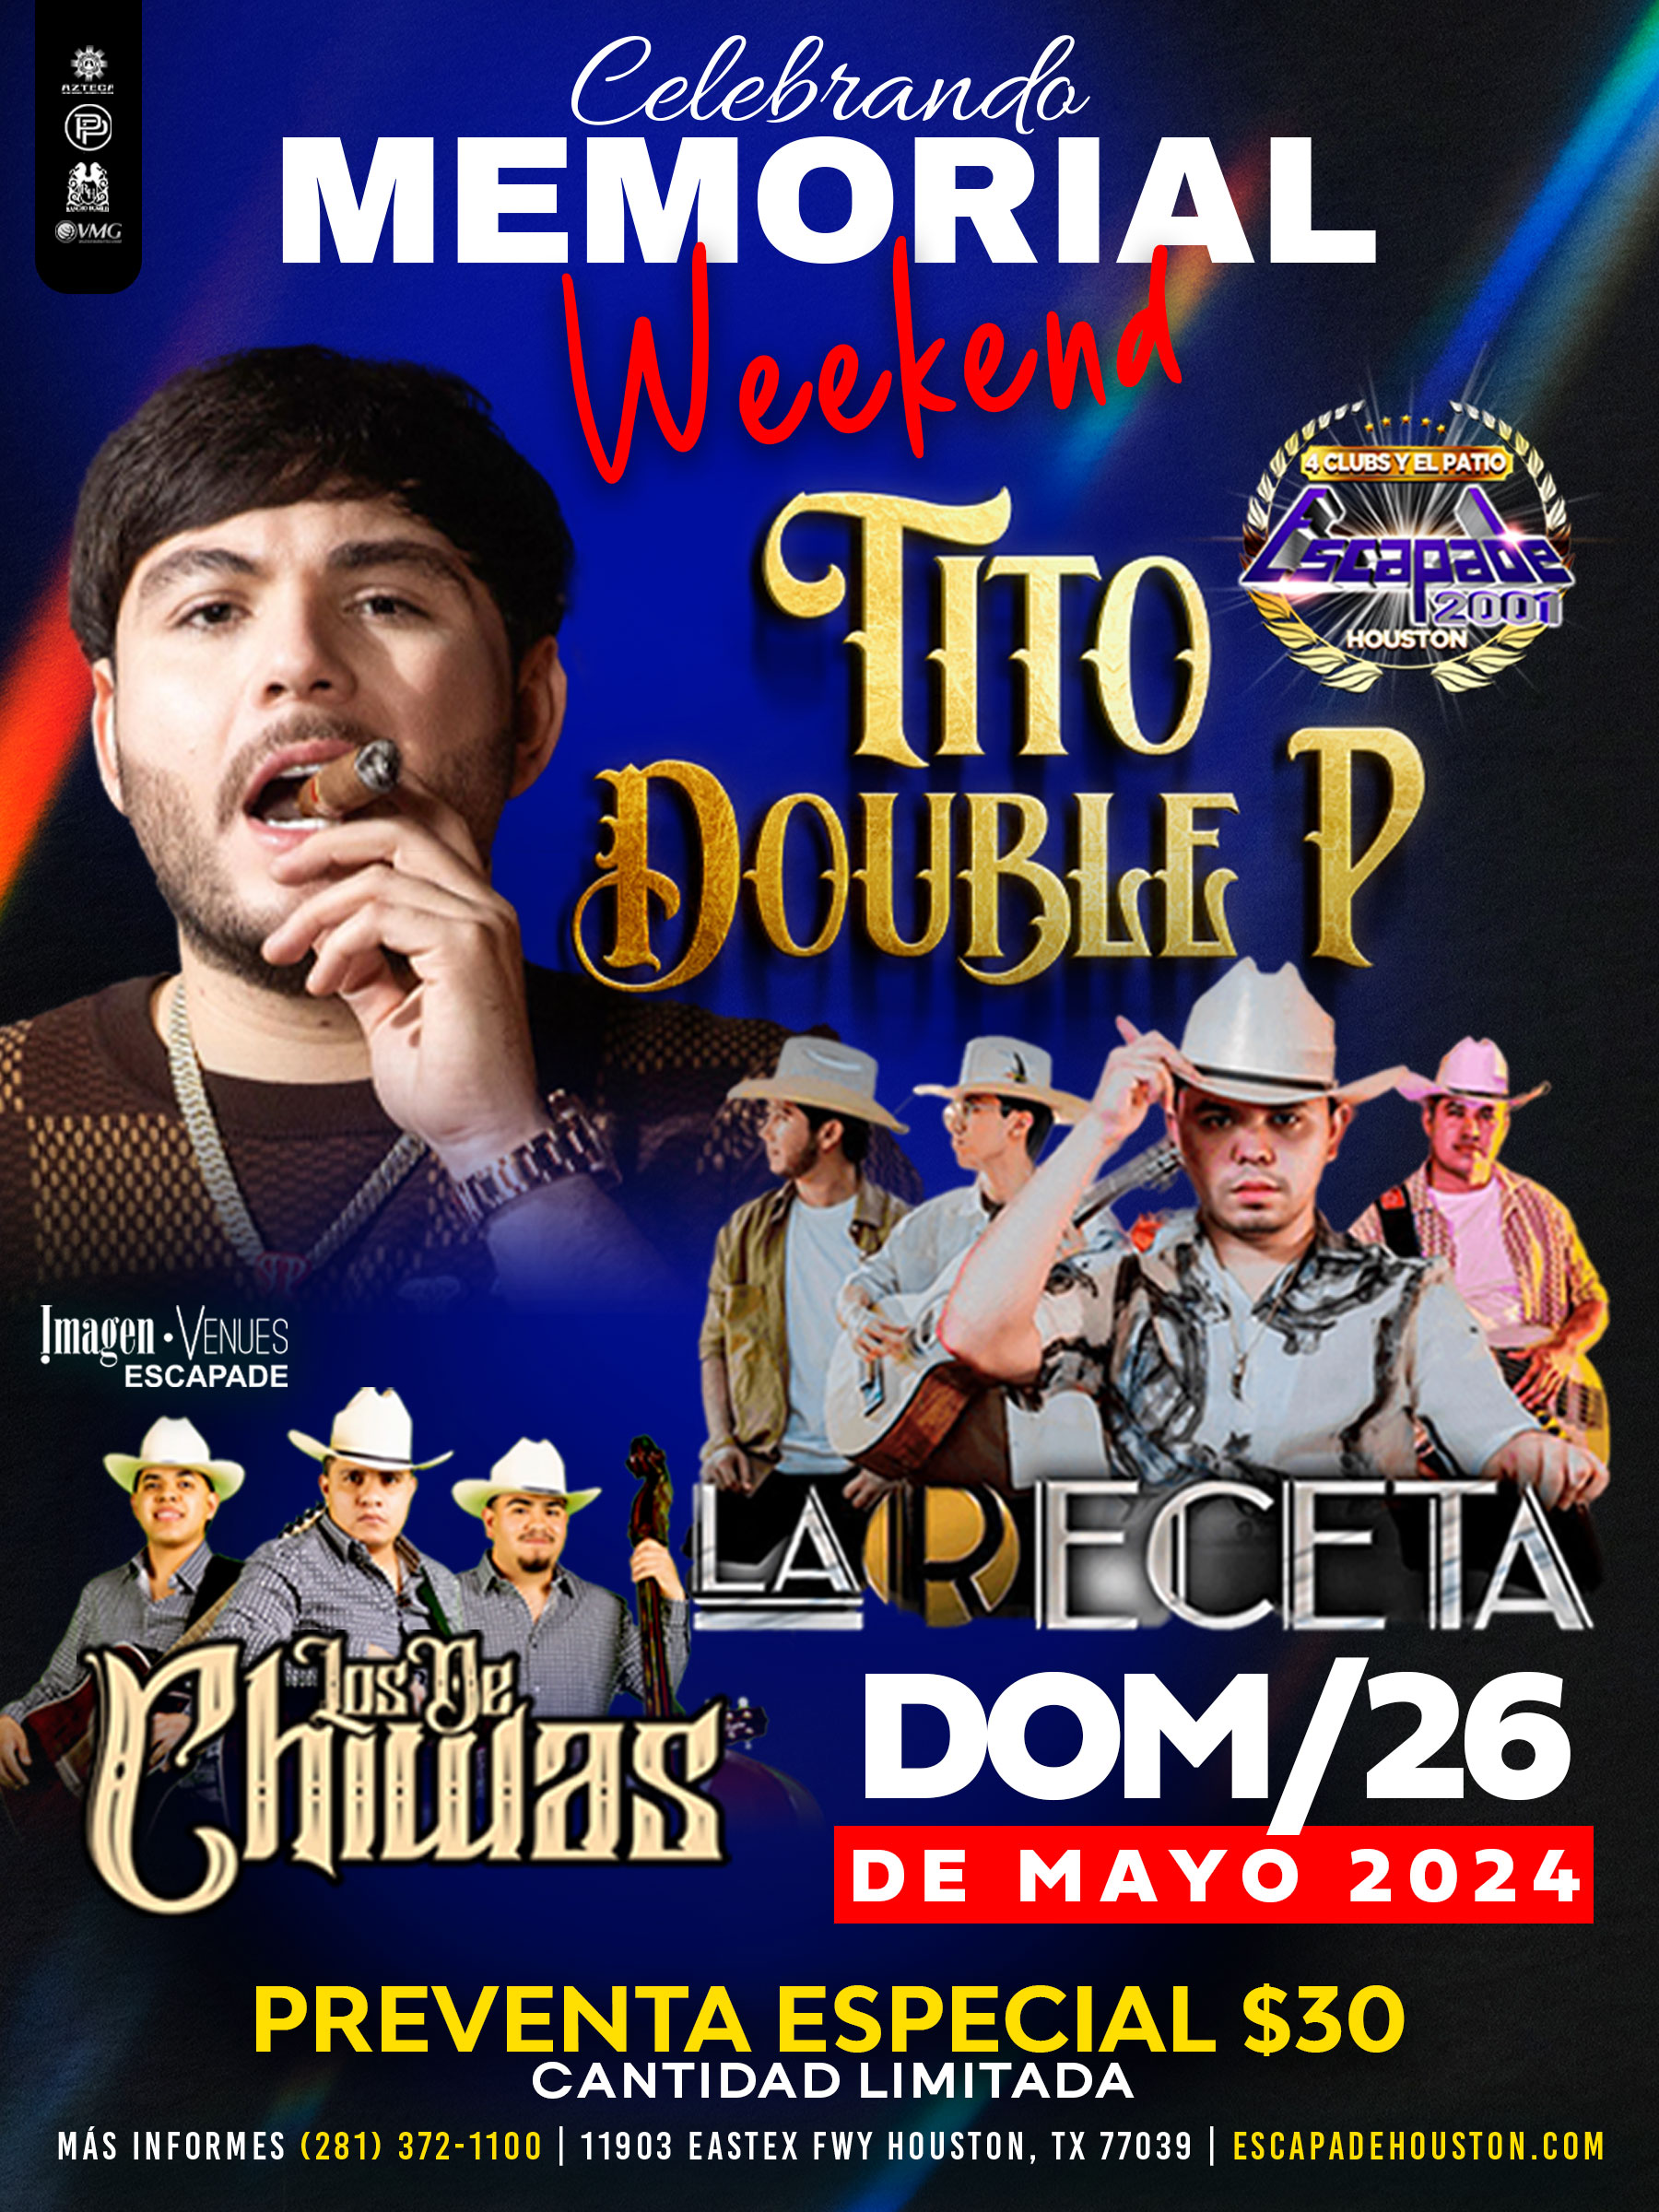 Celebrando Memorial Weekend: Tito Double P, La Receta y Los de Chiwas en Houston 2024